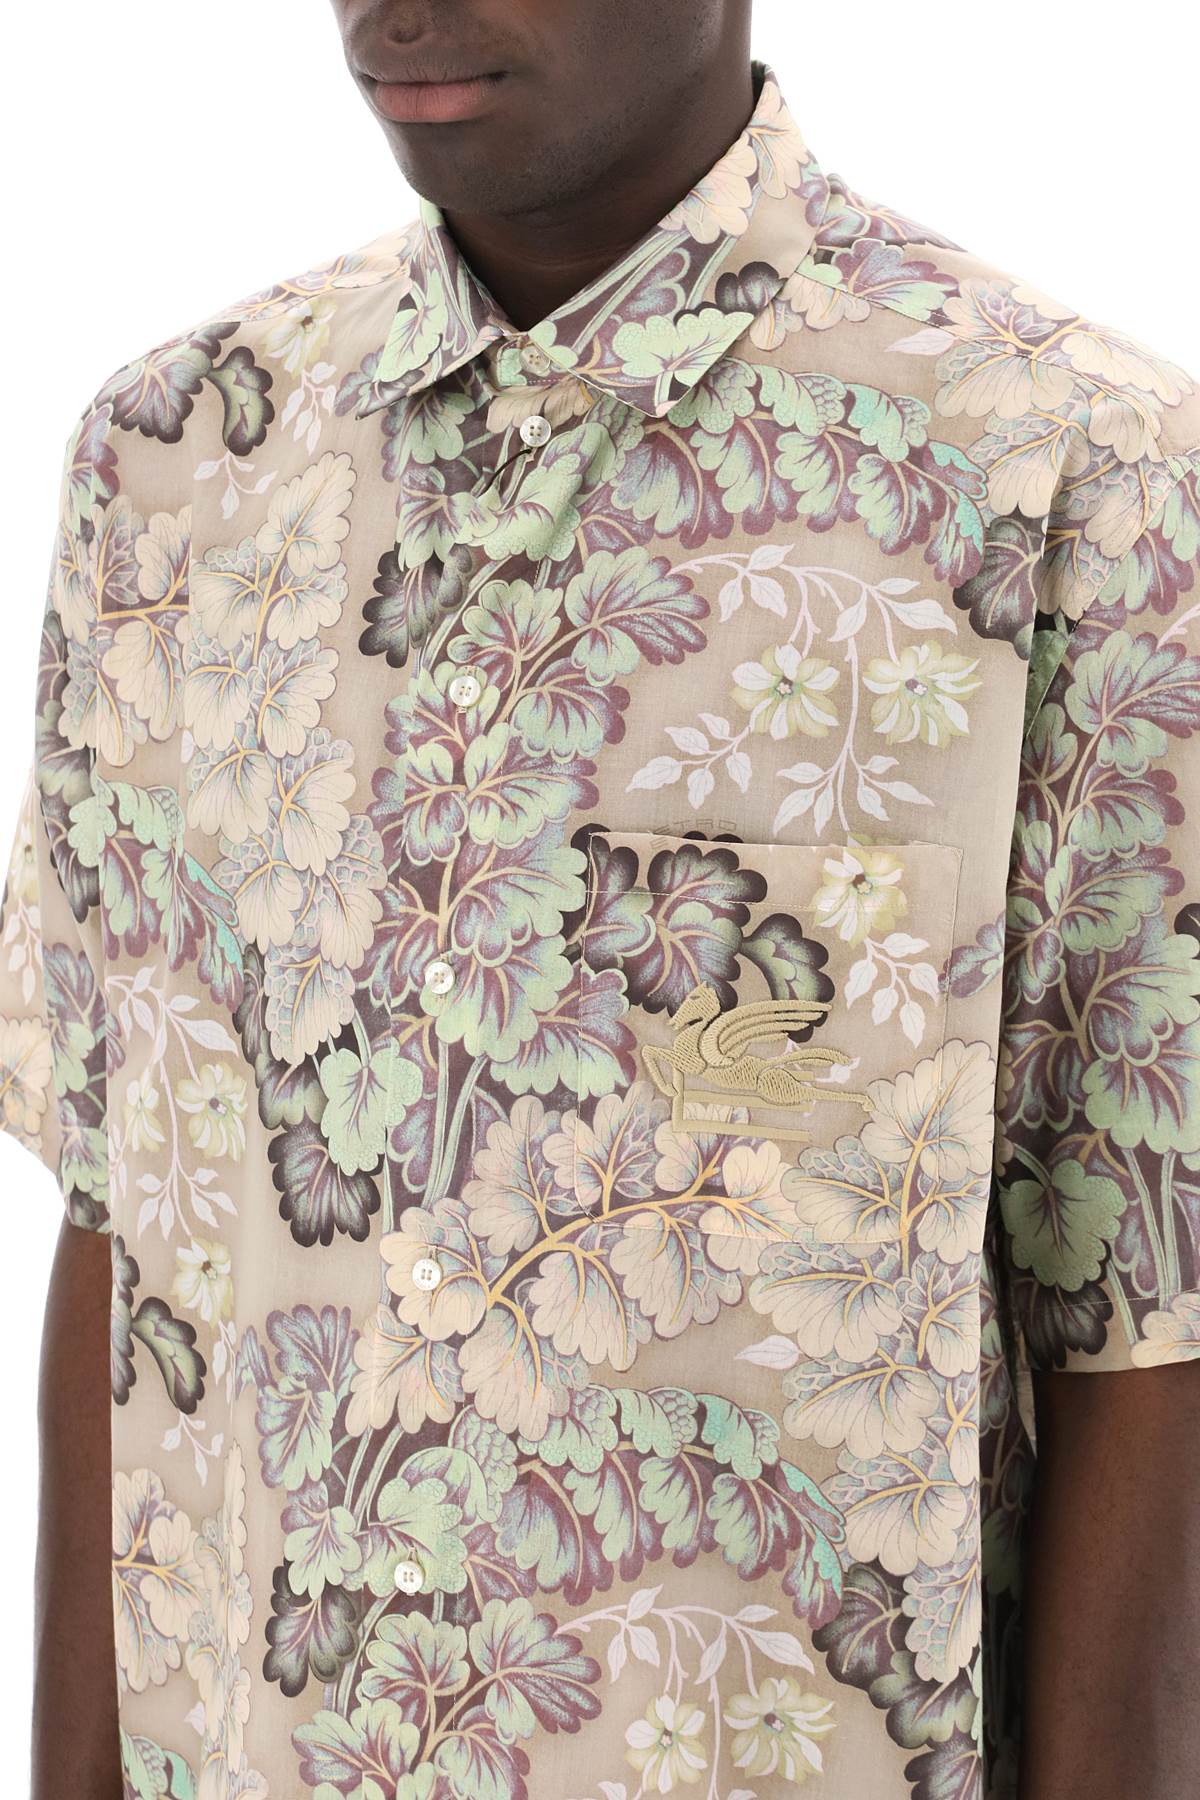 Etro Etro short-sleeved floral shirt